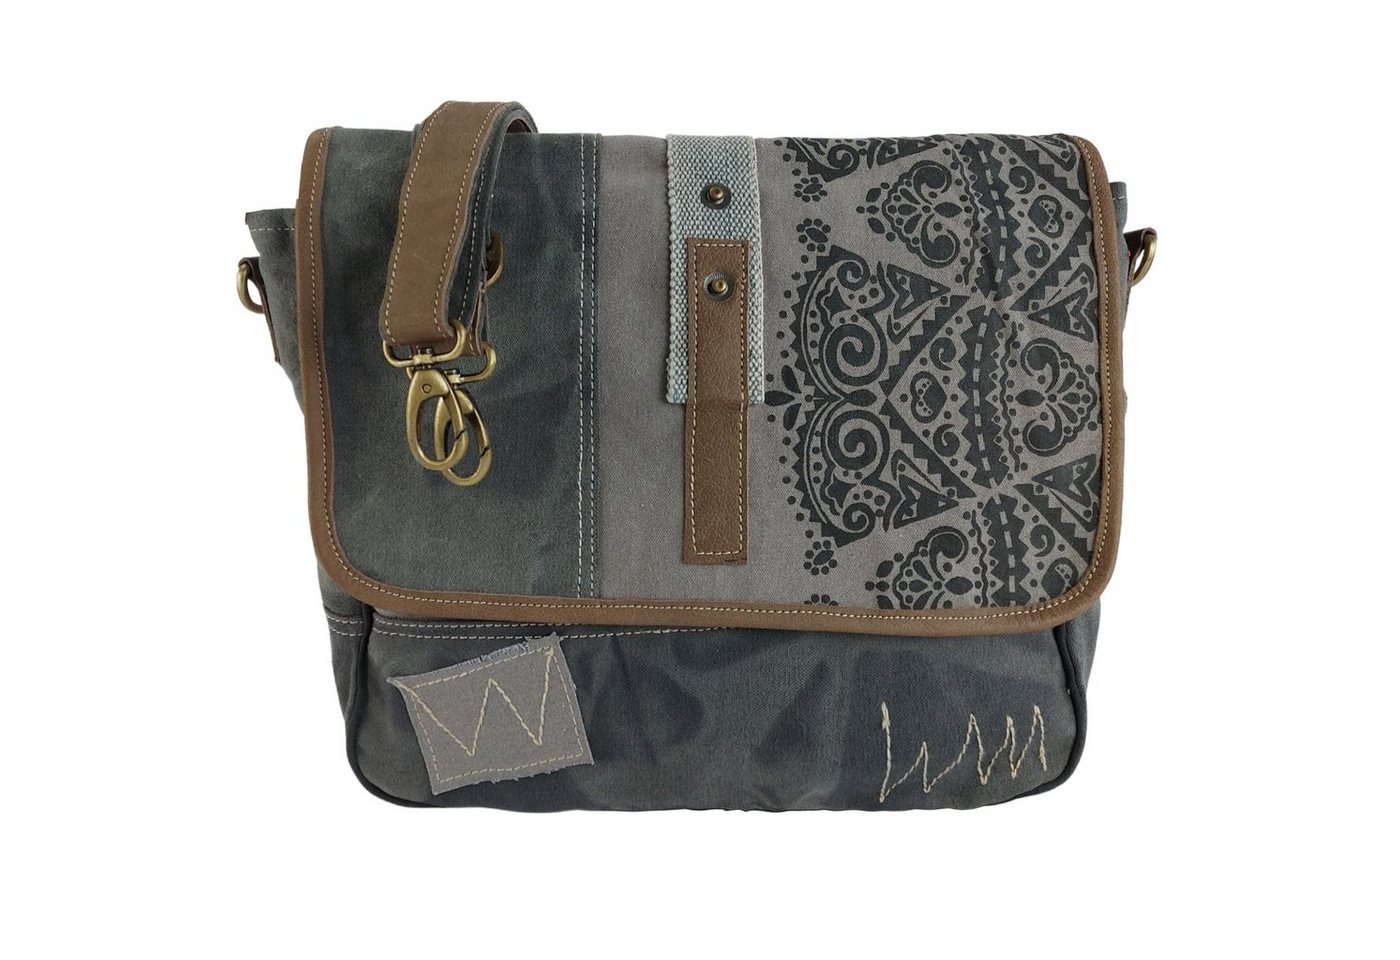 Sunsa Messenger Bag Canvas Messenger Tasche. Große Umhängetasche mit Mandala Design. Grau/ schwarz Crossbody Bag mit Handyfach unter der Frontklappe. 52508 von Sunsa